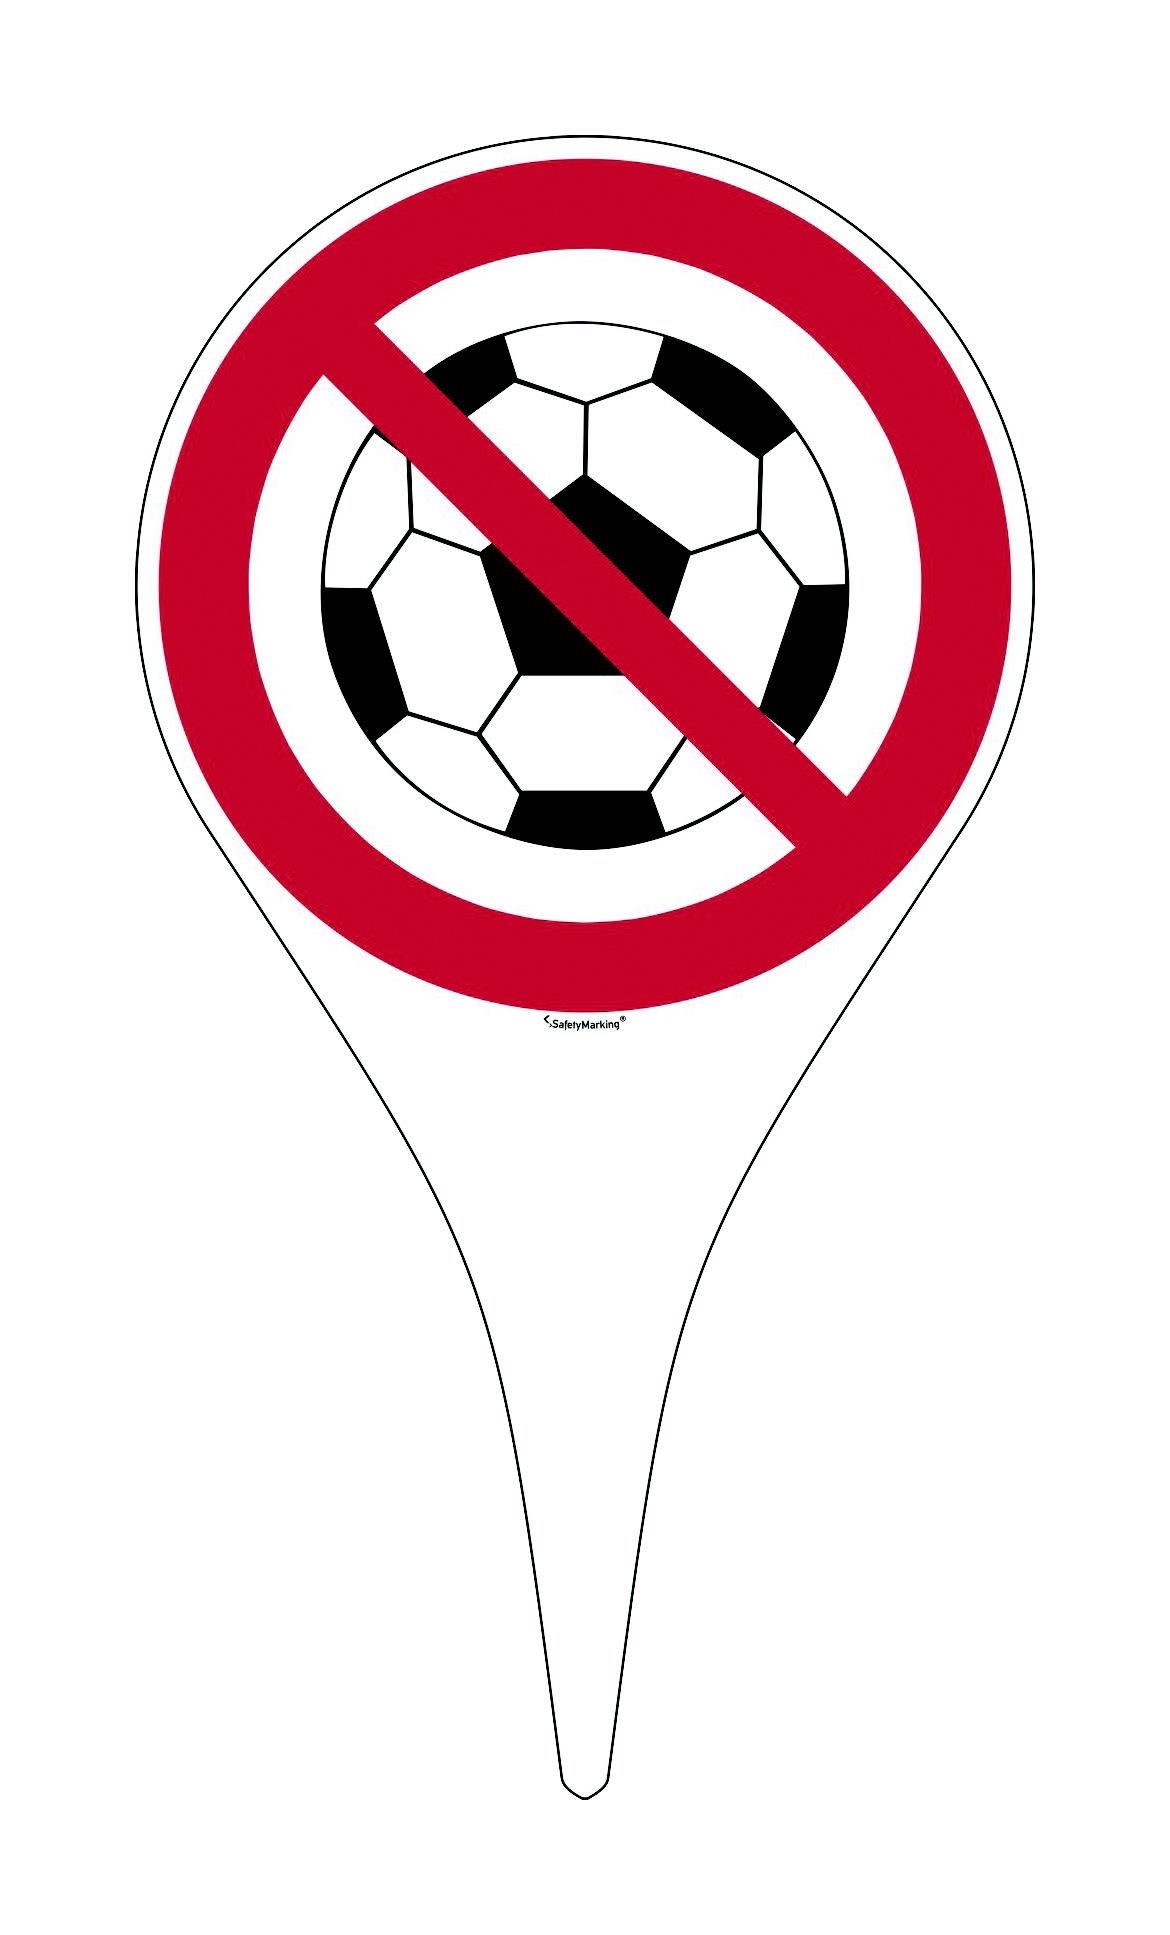 Erdspieß mit Verbotsschild - Symbol: Ballspielen verboten